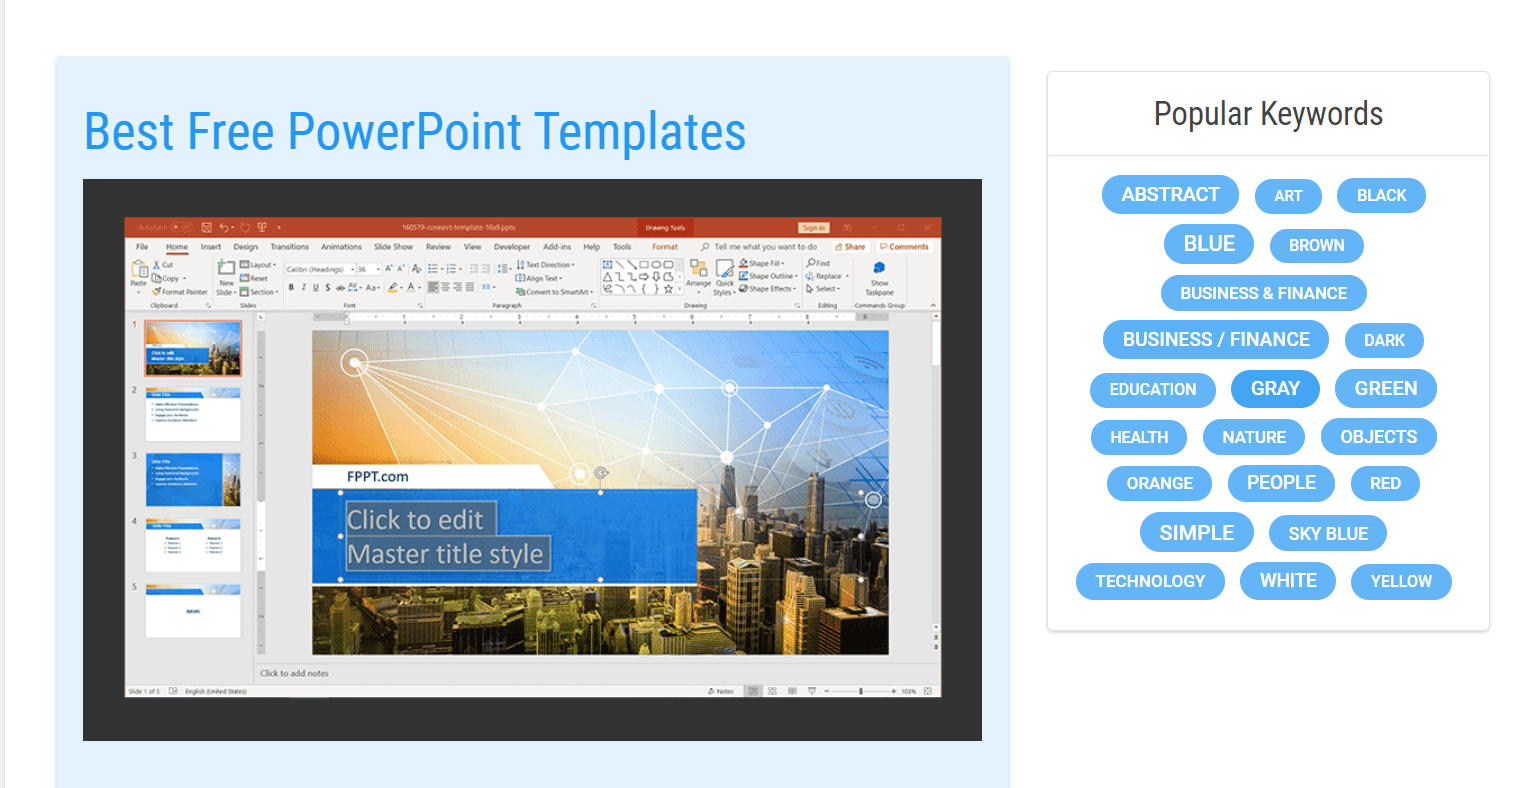 7 เว็บไซต์ ดาวน์โหลด Template Powerpoint ฟรี สวย ใช้งานง่าย